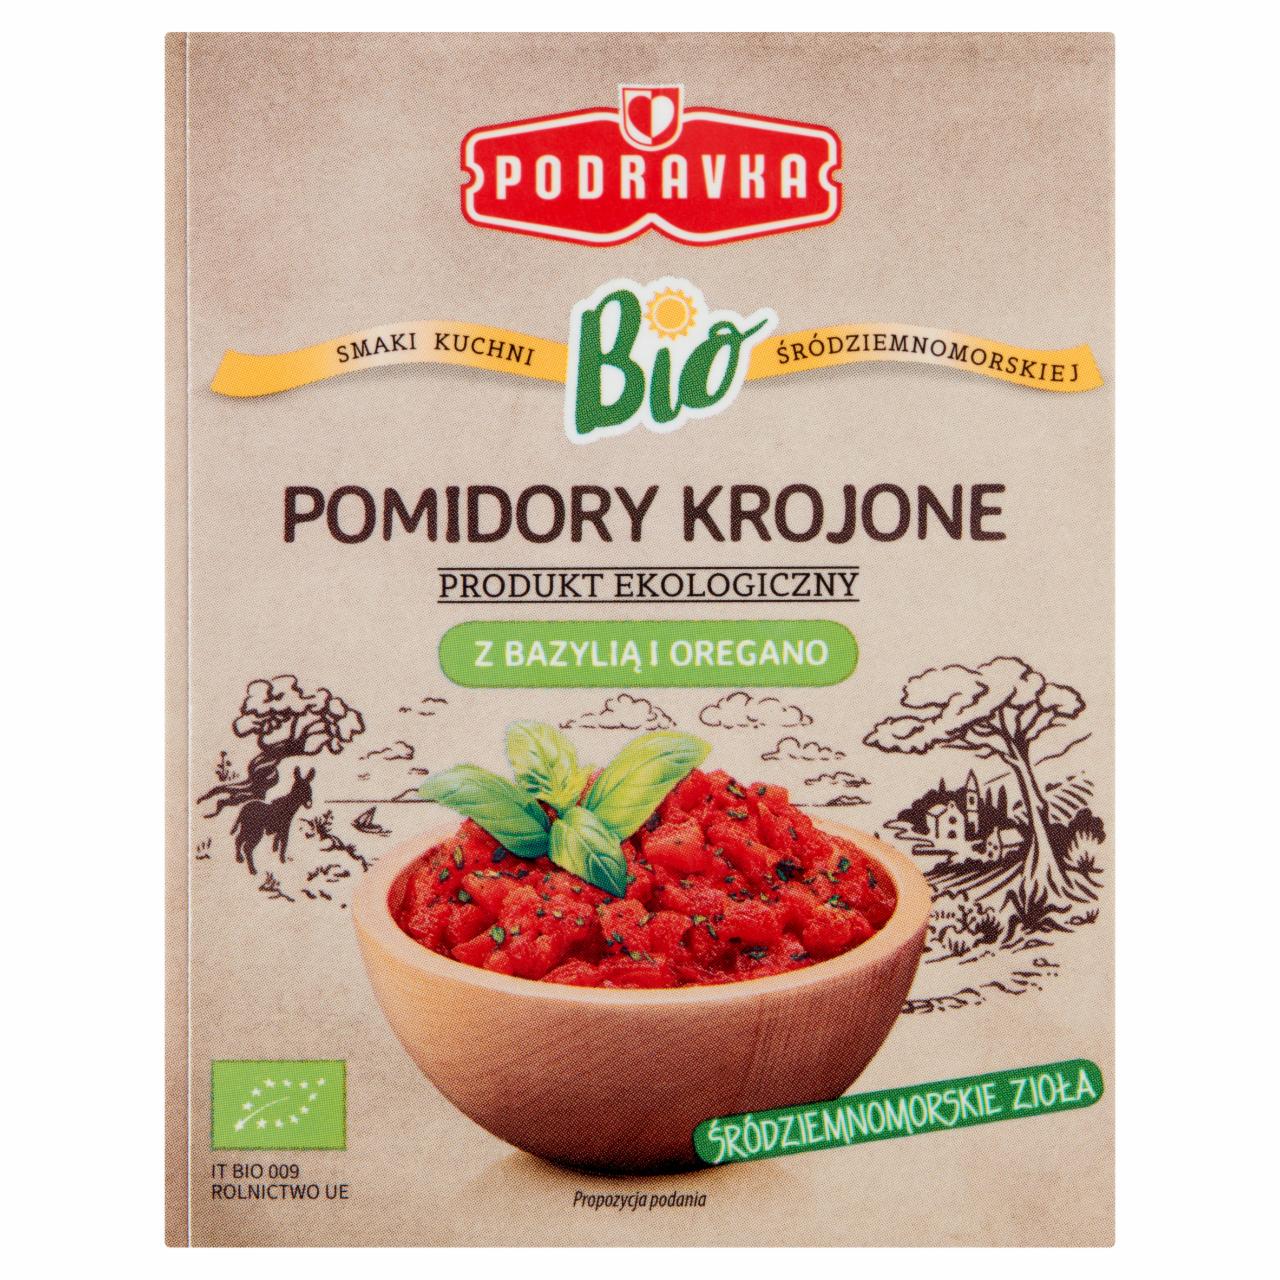 Zdjęcia - Podravka Bio Pomidory krojone z bazylią i oregano